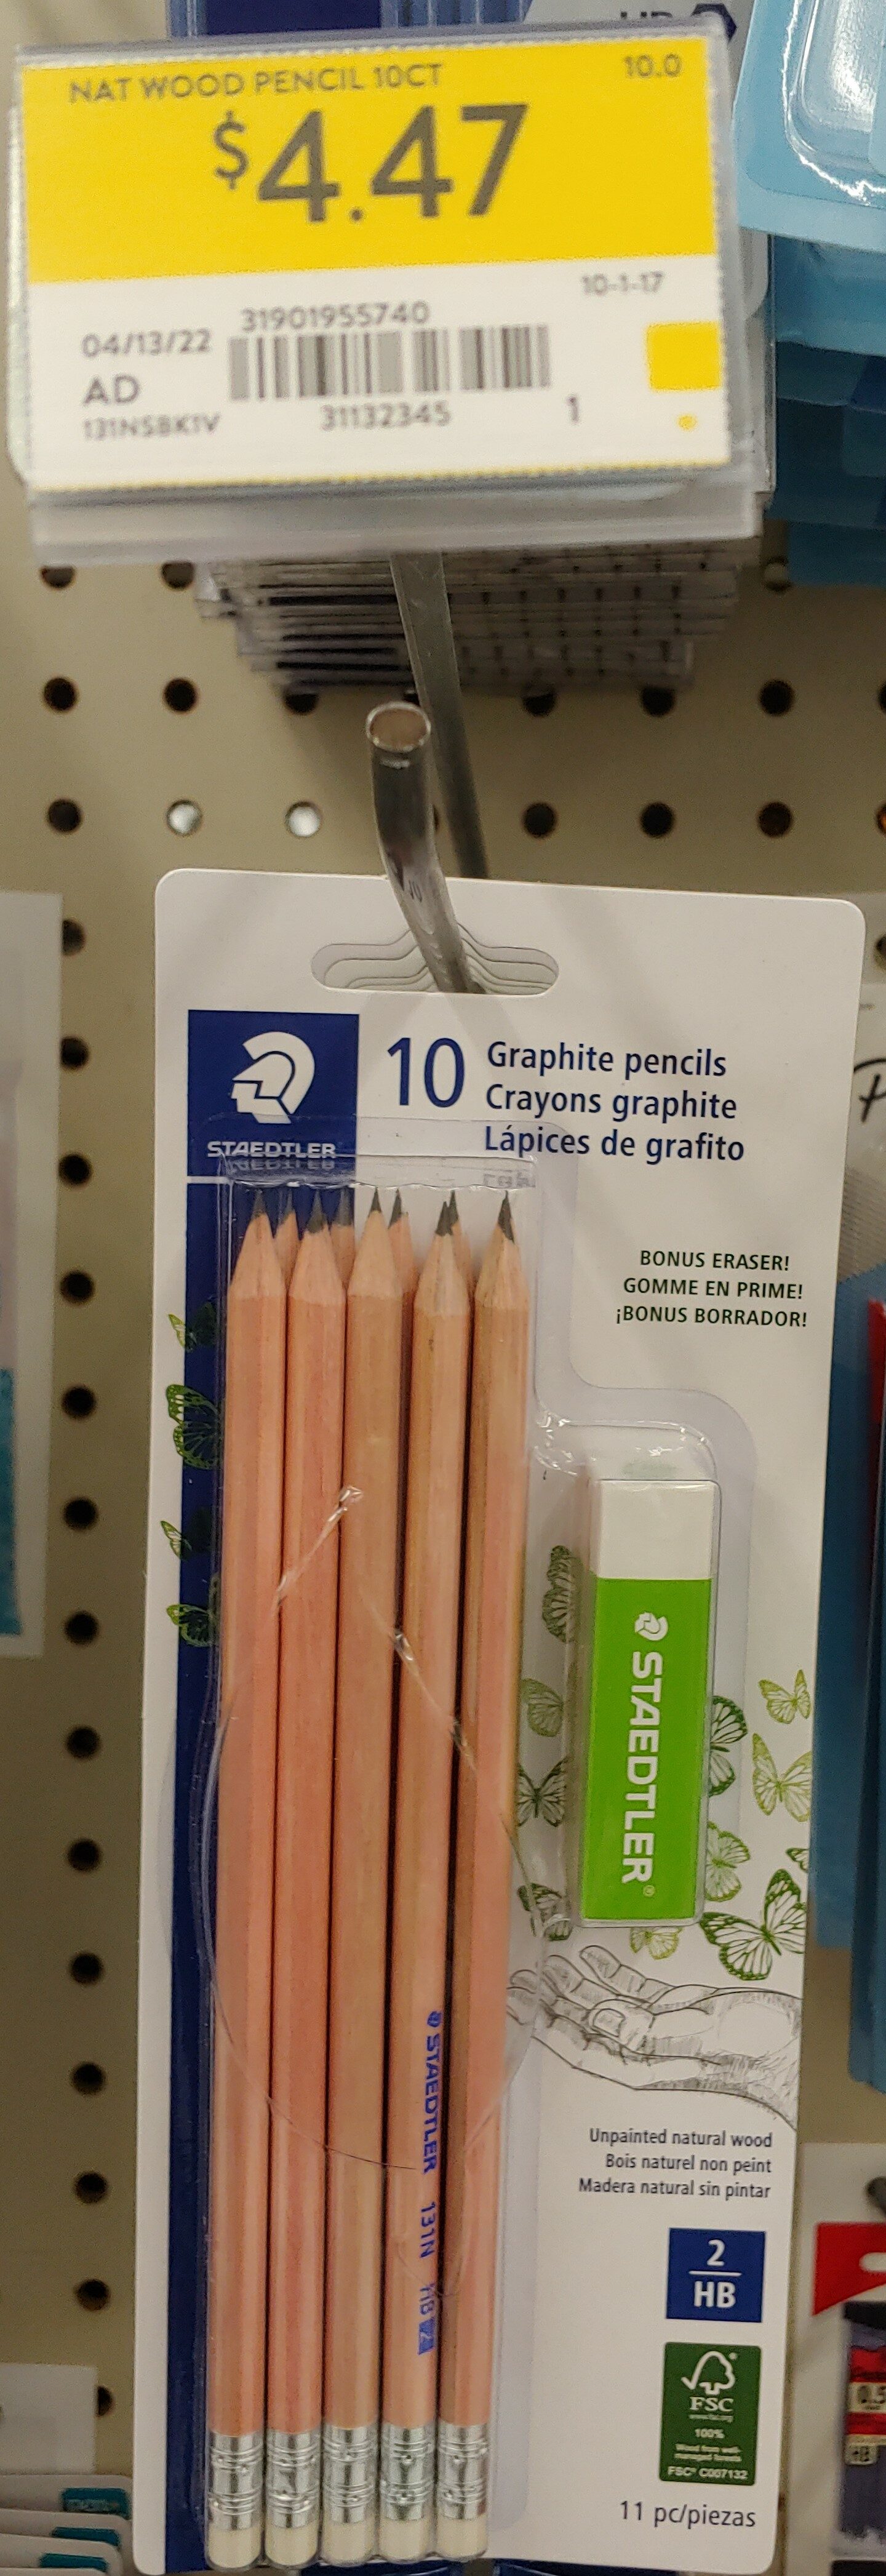 Staedtler Pre-Sharpened No. 2 Pencils